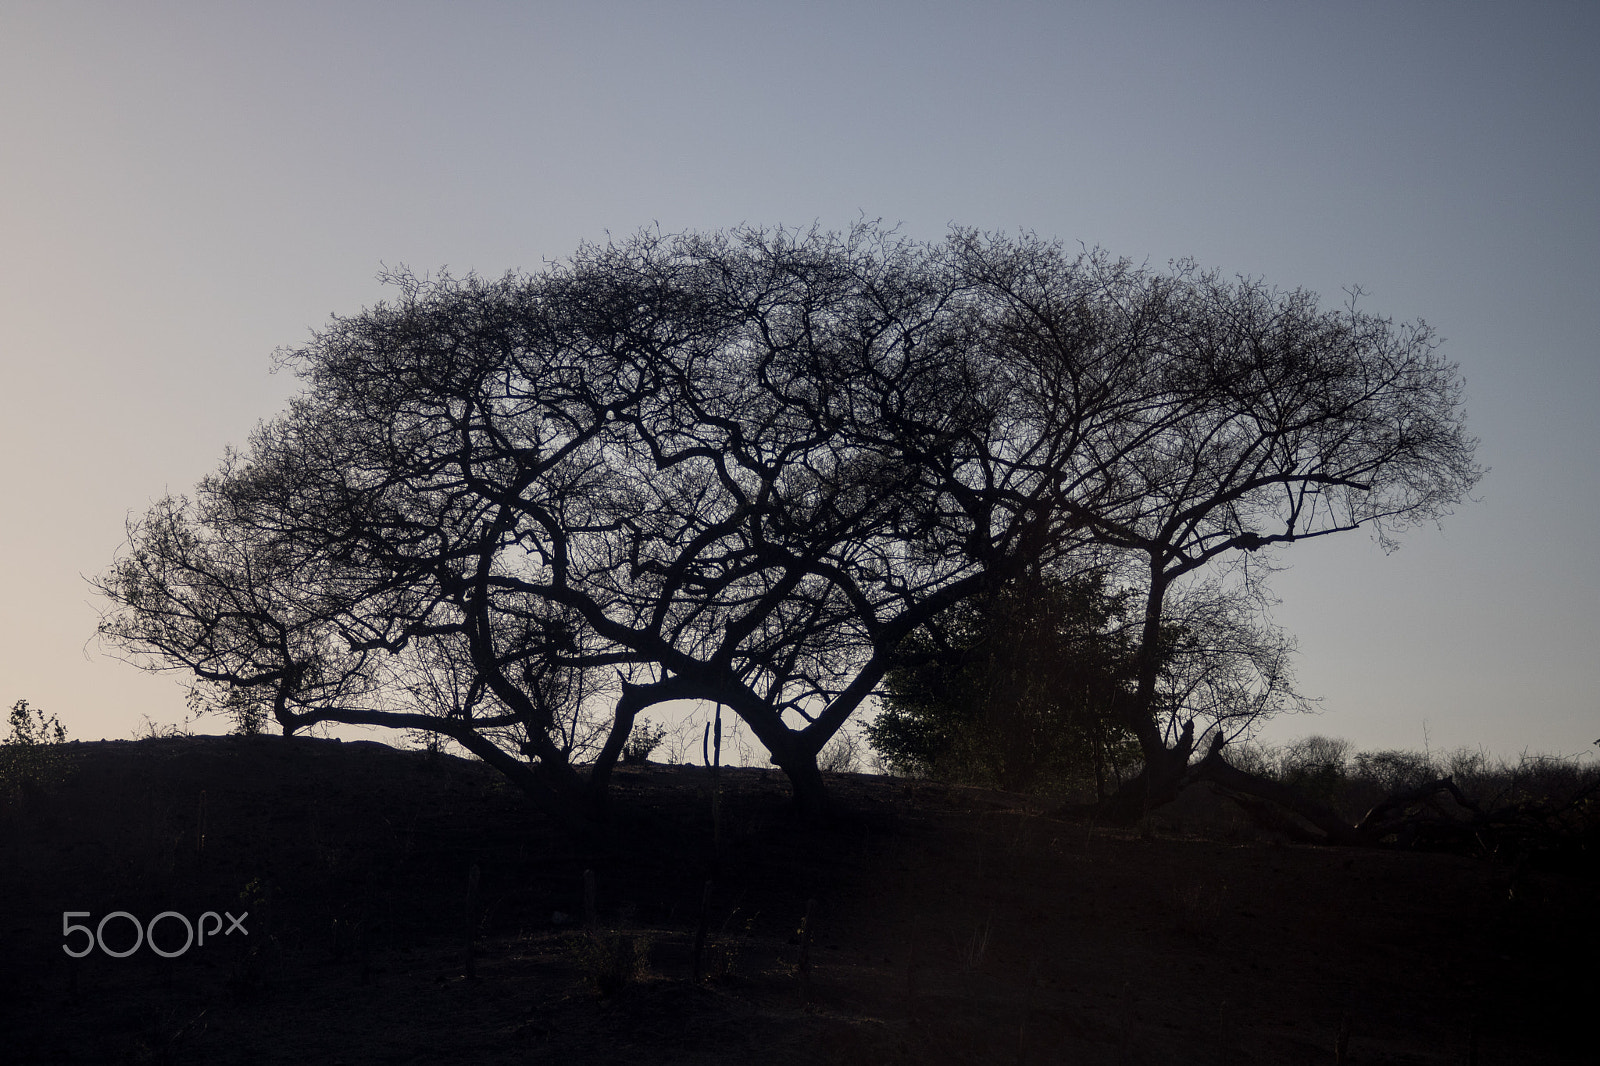 Canon EOS 760D (EOS Rebel T6s / EOS 8000D) + Canon EF 35-105mm f/3.5-4.5 sample photo. Sunrise behind the tree photography